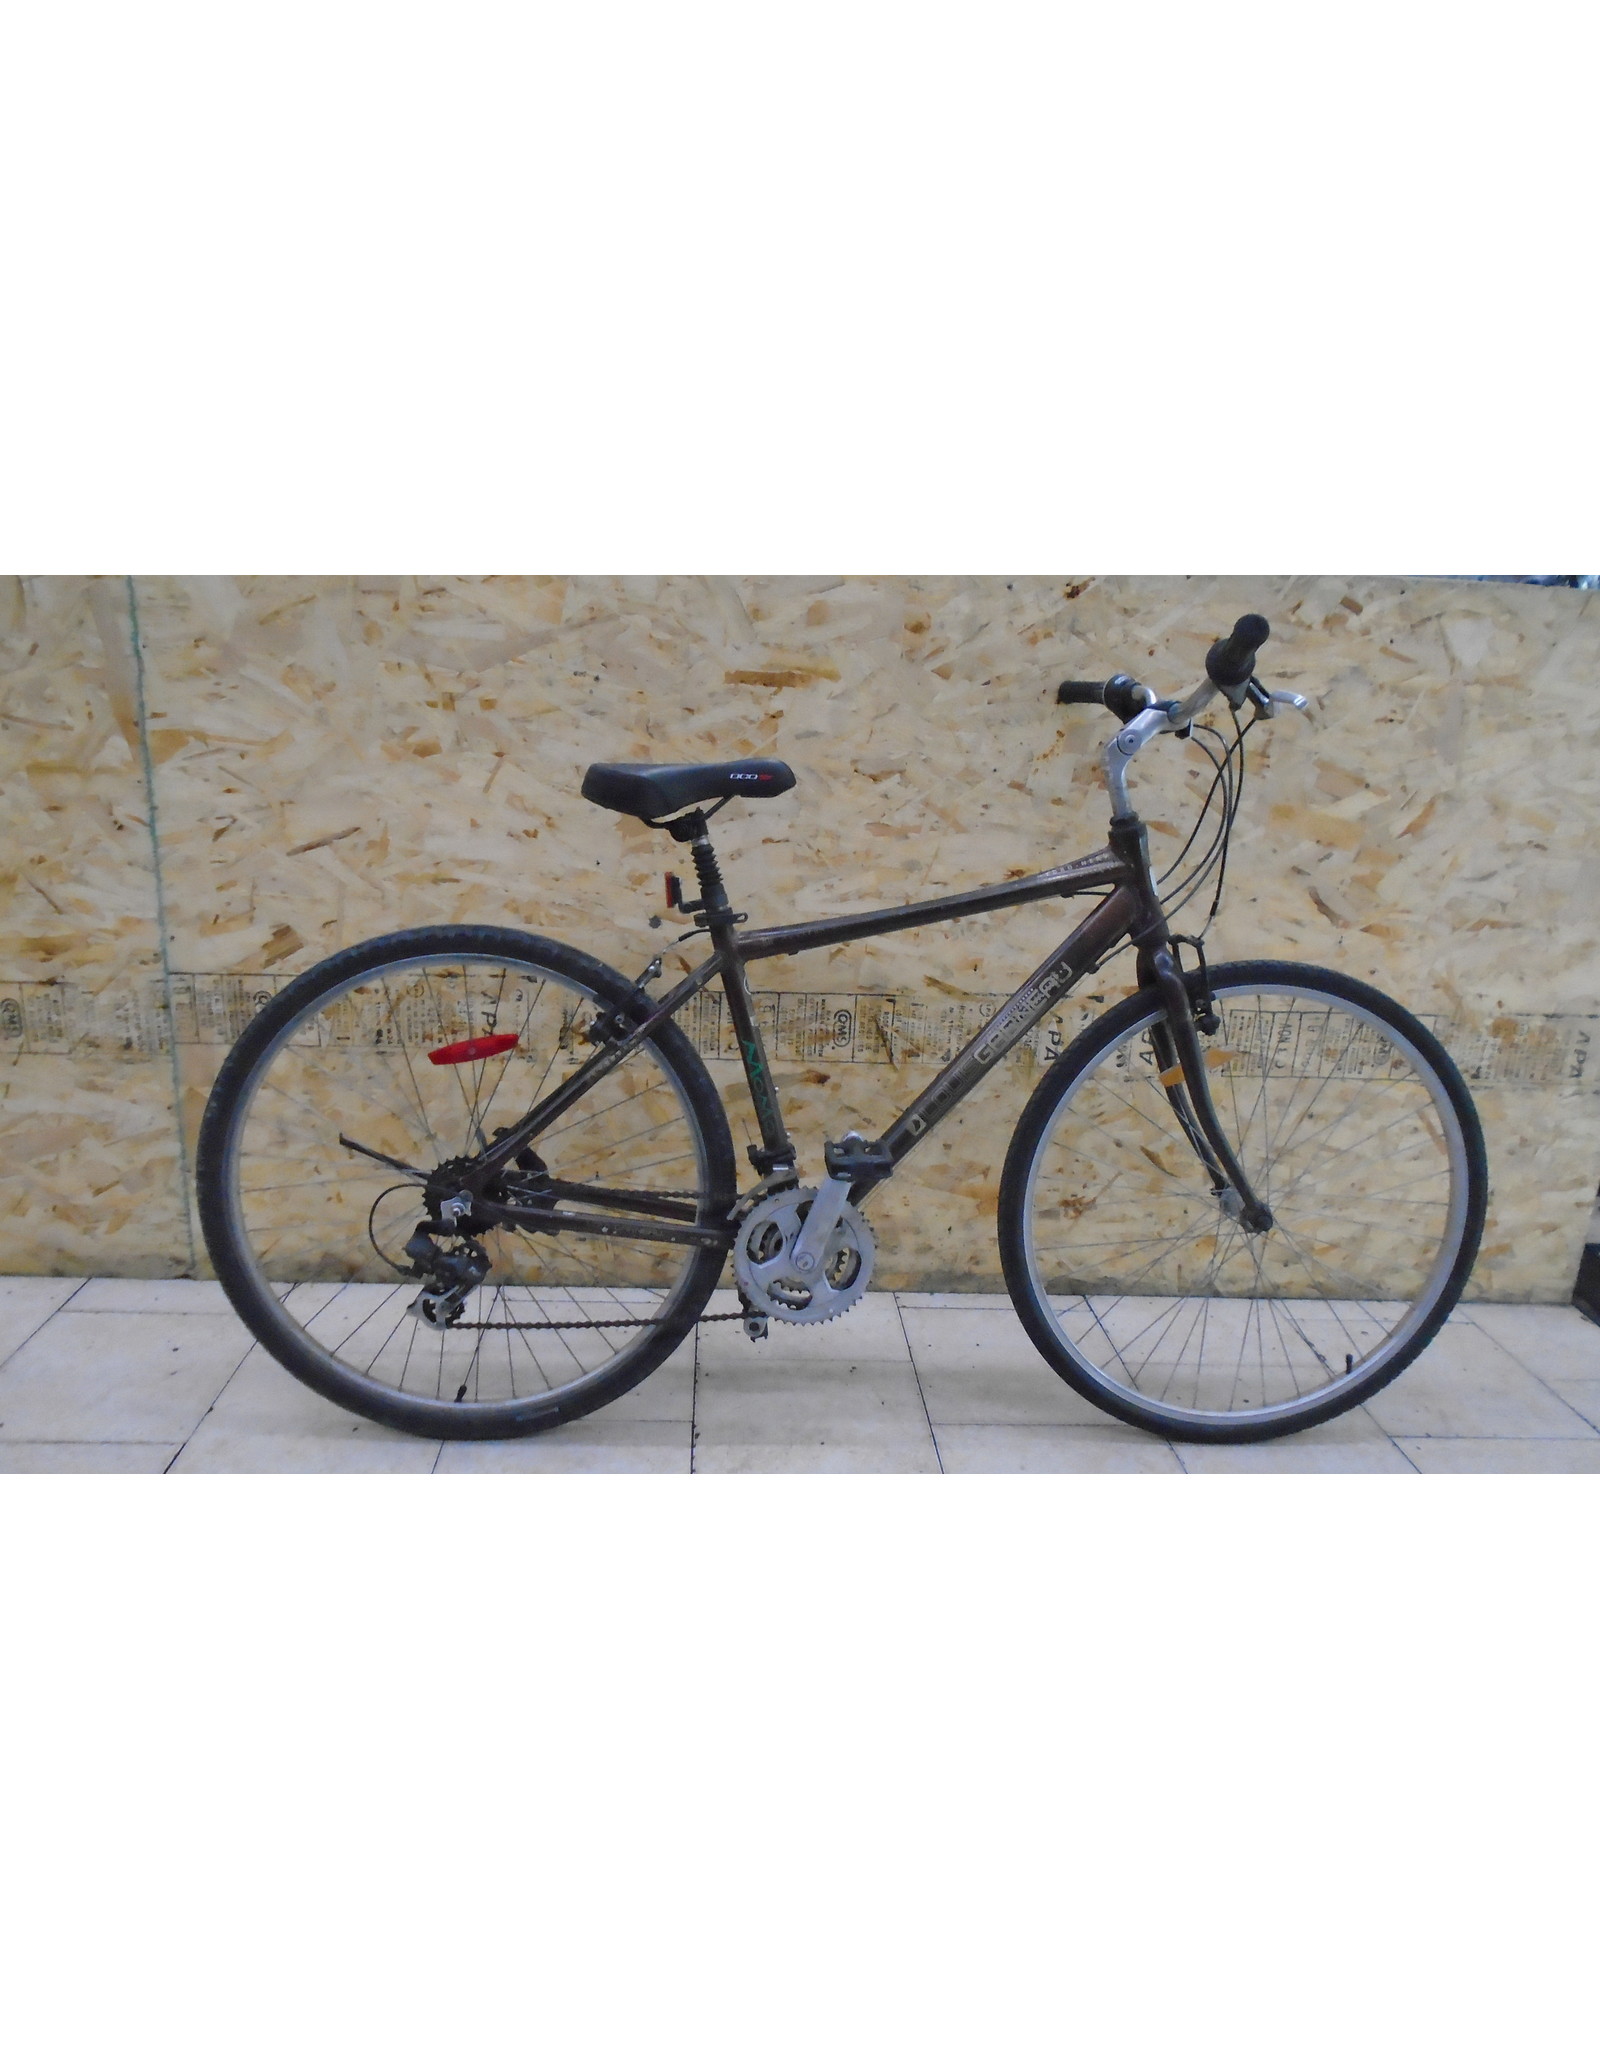 Vélo usagé hybride Louis-Garneau 18" - 11724